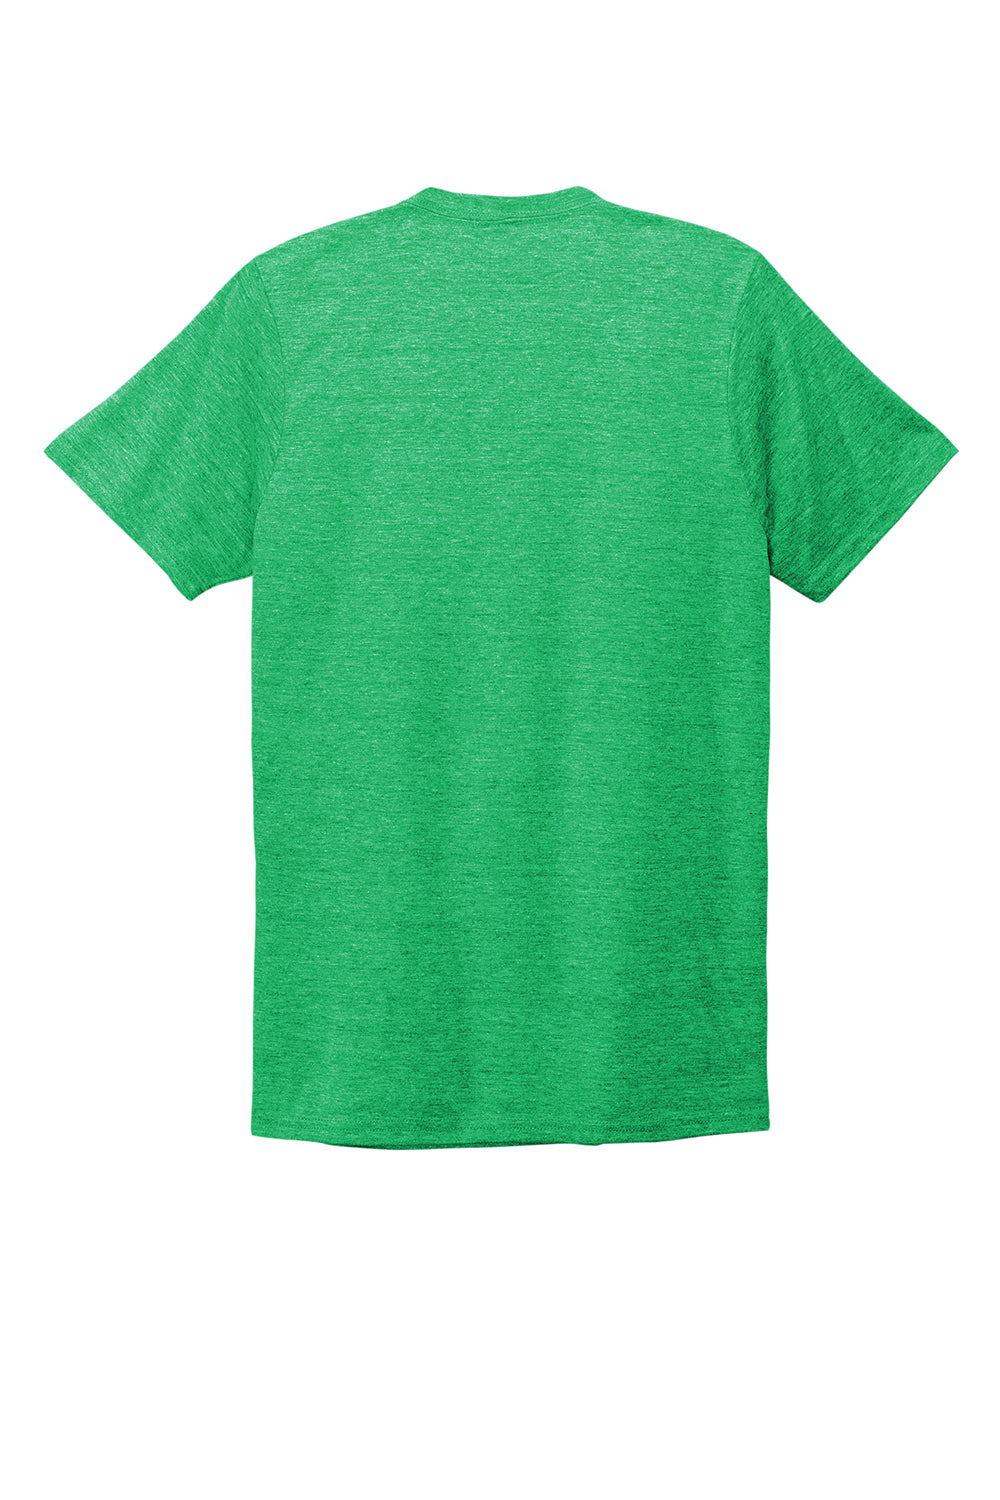 Allmade AL2014 Mens Short Sleeve V-Neck T-Shirt Enviro Green Flat Back